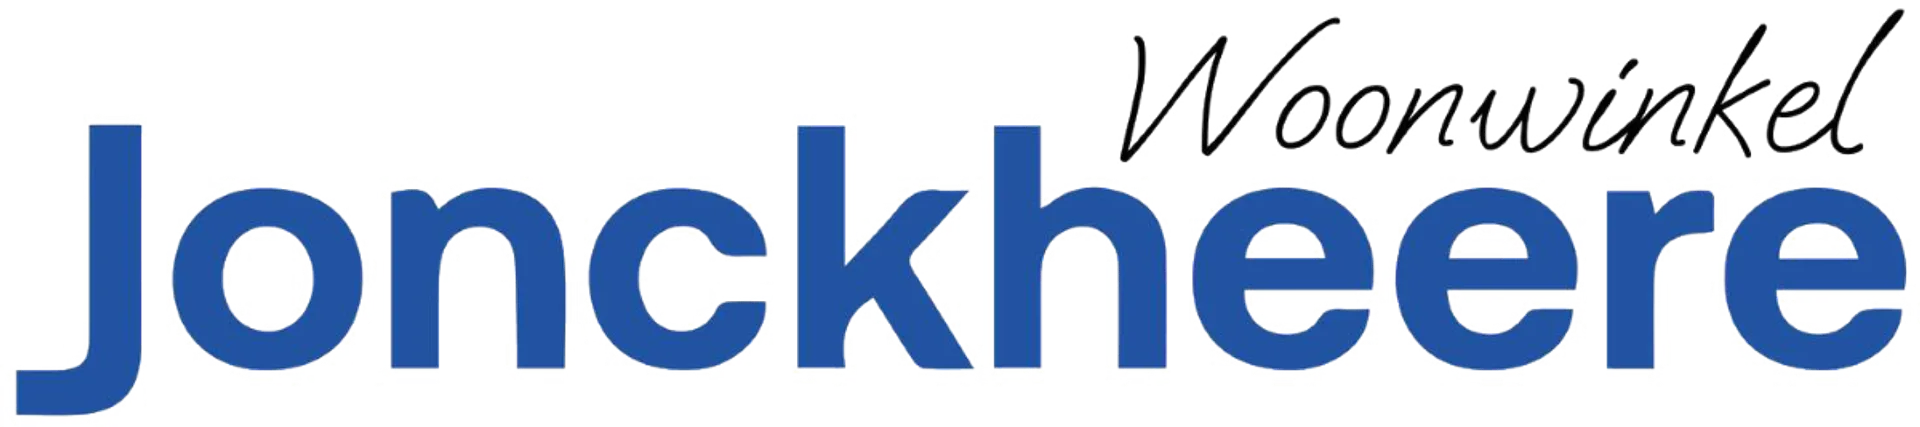 MEUBELEN JONCKHEERE logo